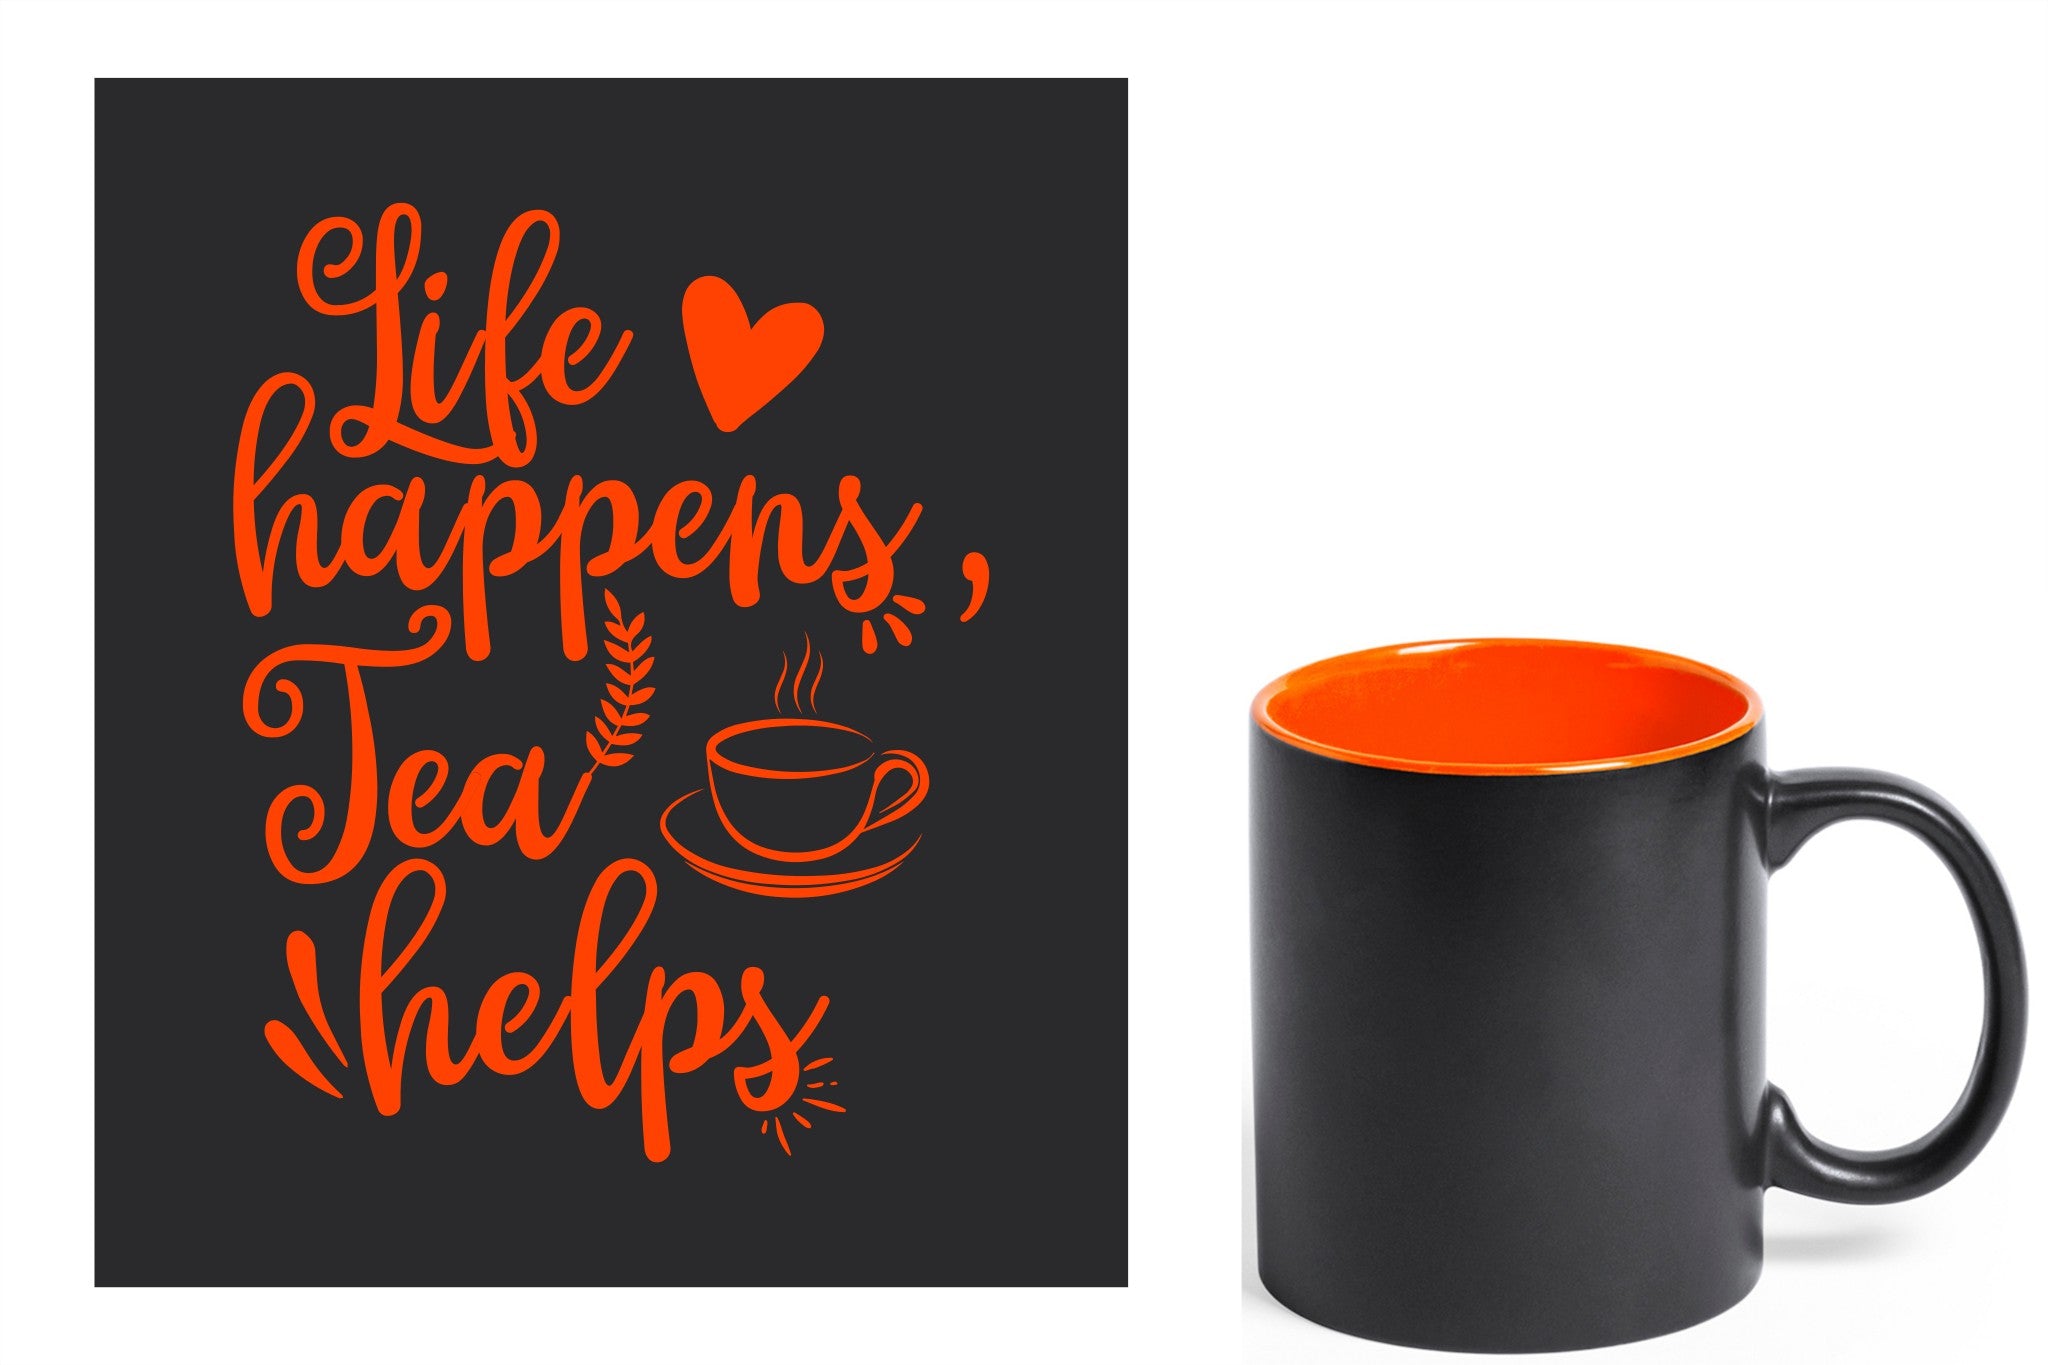 zwarte keramische mok met oranje gravure  'Life happens tea helps'.